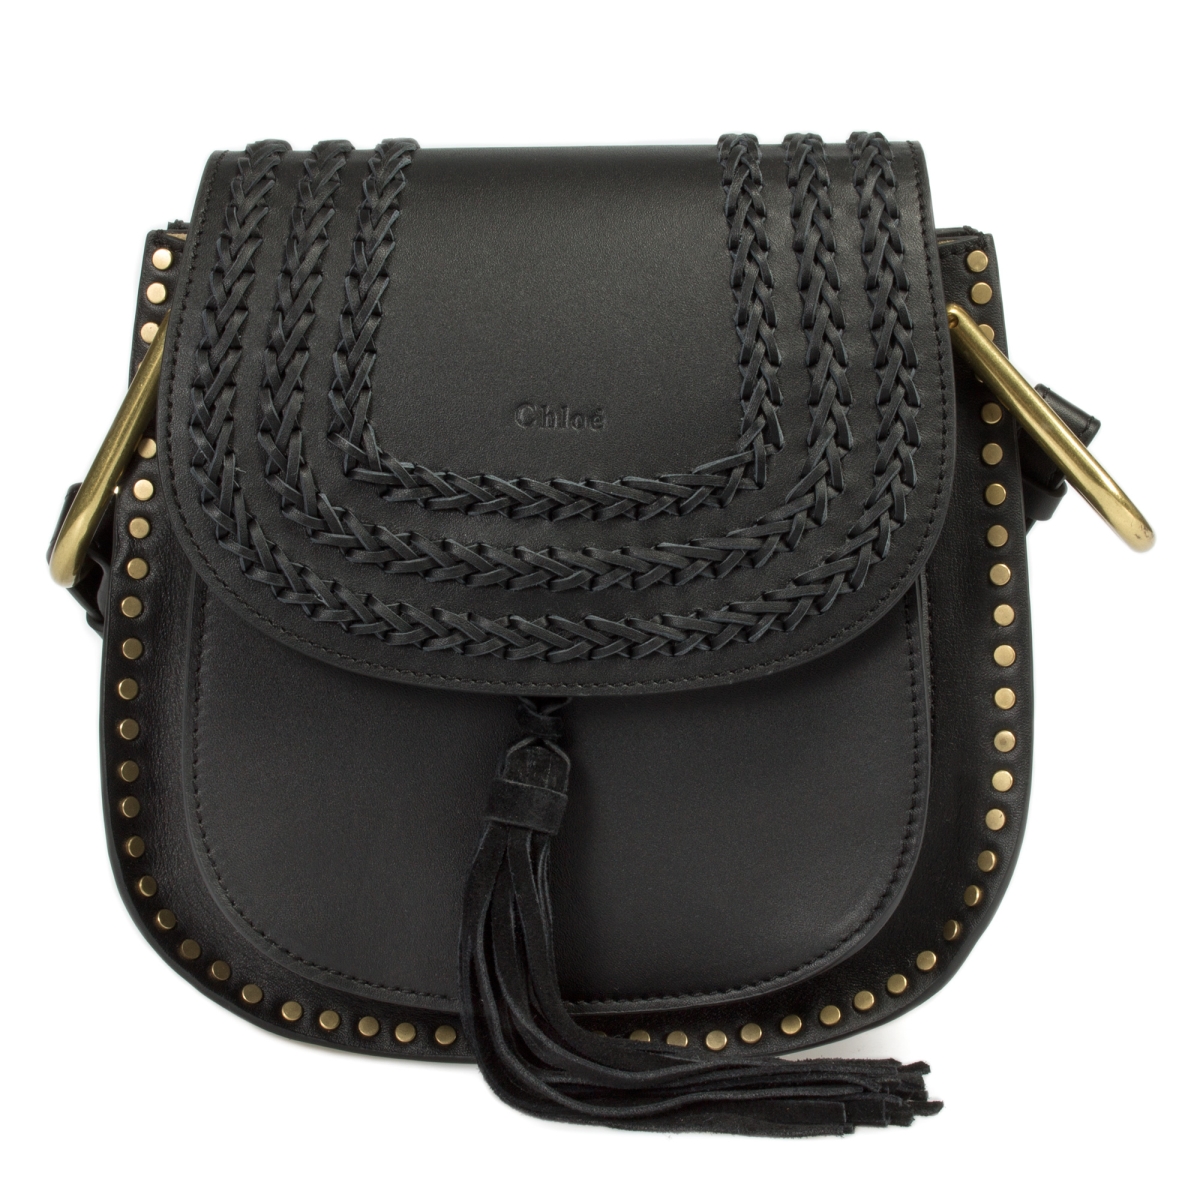 Chl-hbag-hson-blk-gld-s Hudson Calfskin Shoulder Bag, Black With Gold Hardware